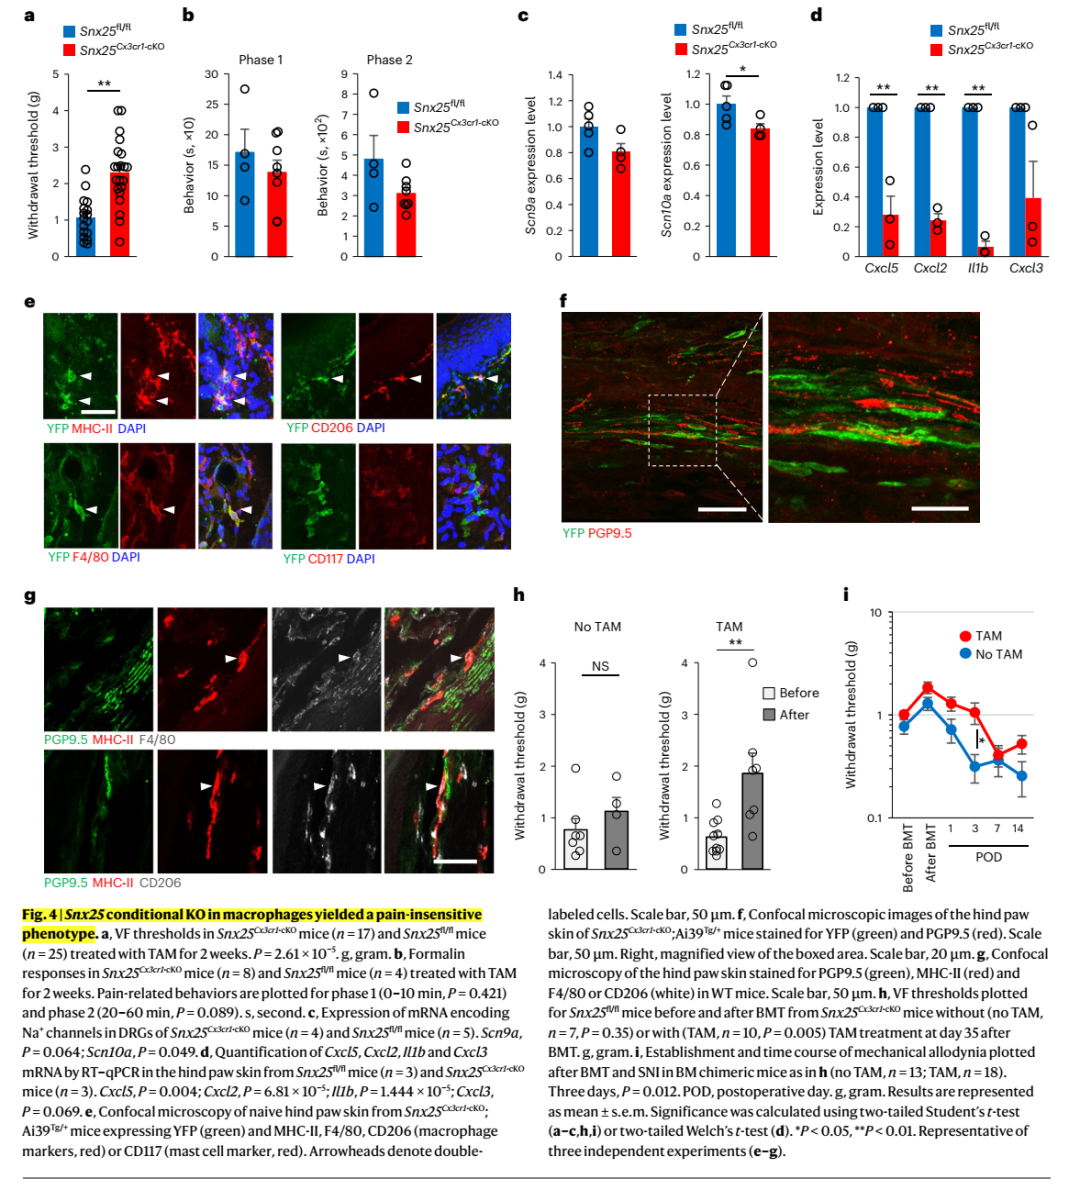 神经免疫<font color="red">交互</font>调控痛觉敏感度：皮肤巨噬细胞SNX25通过调控NGF的表达进而设定痛觉敏感度